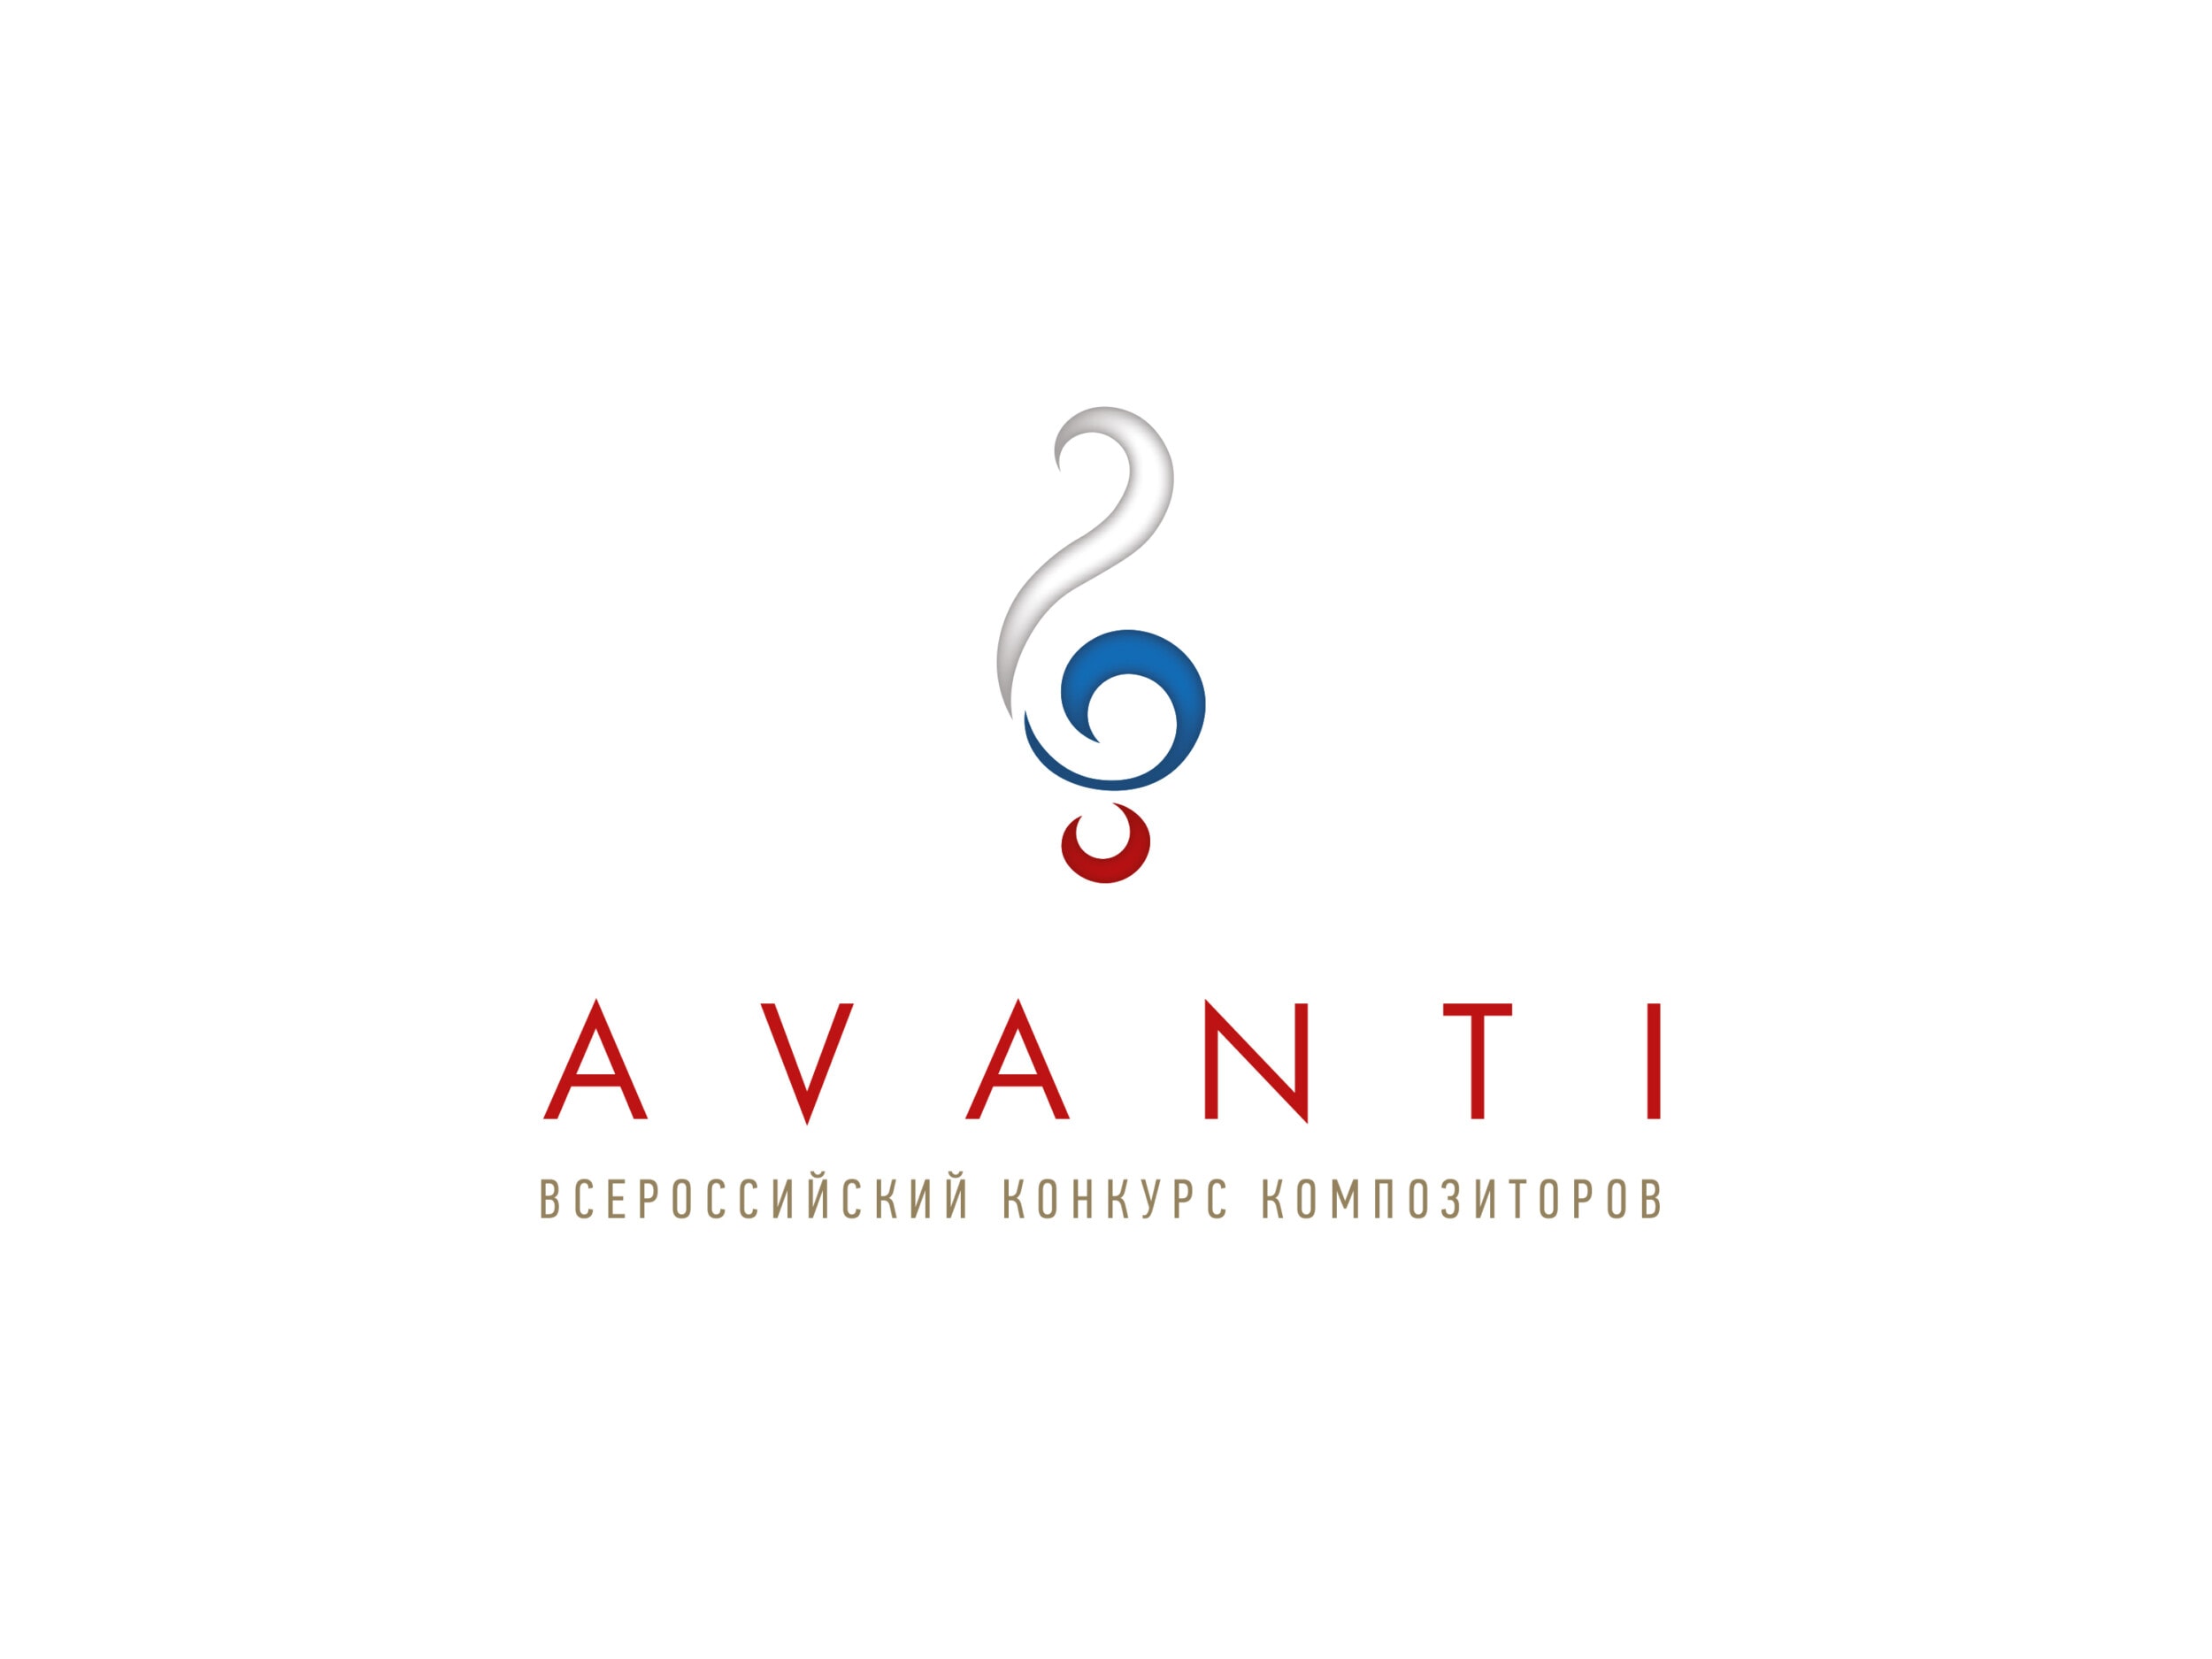 Союз композиторов России объявил победителей композиторского конкурса AVANTI